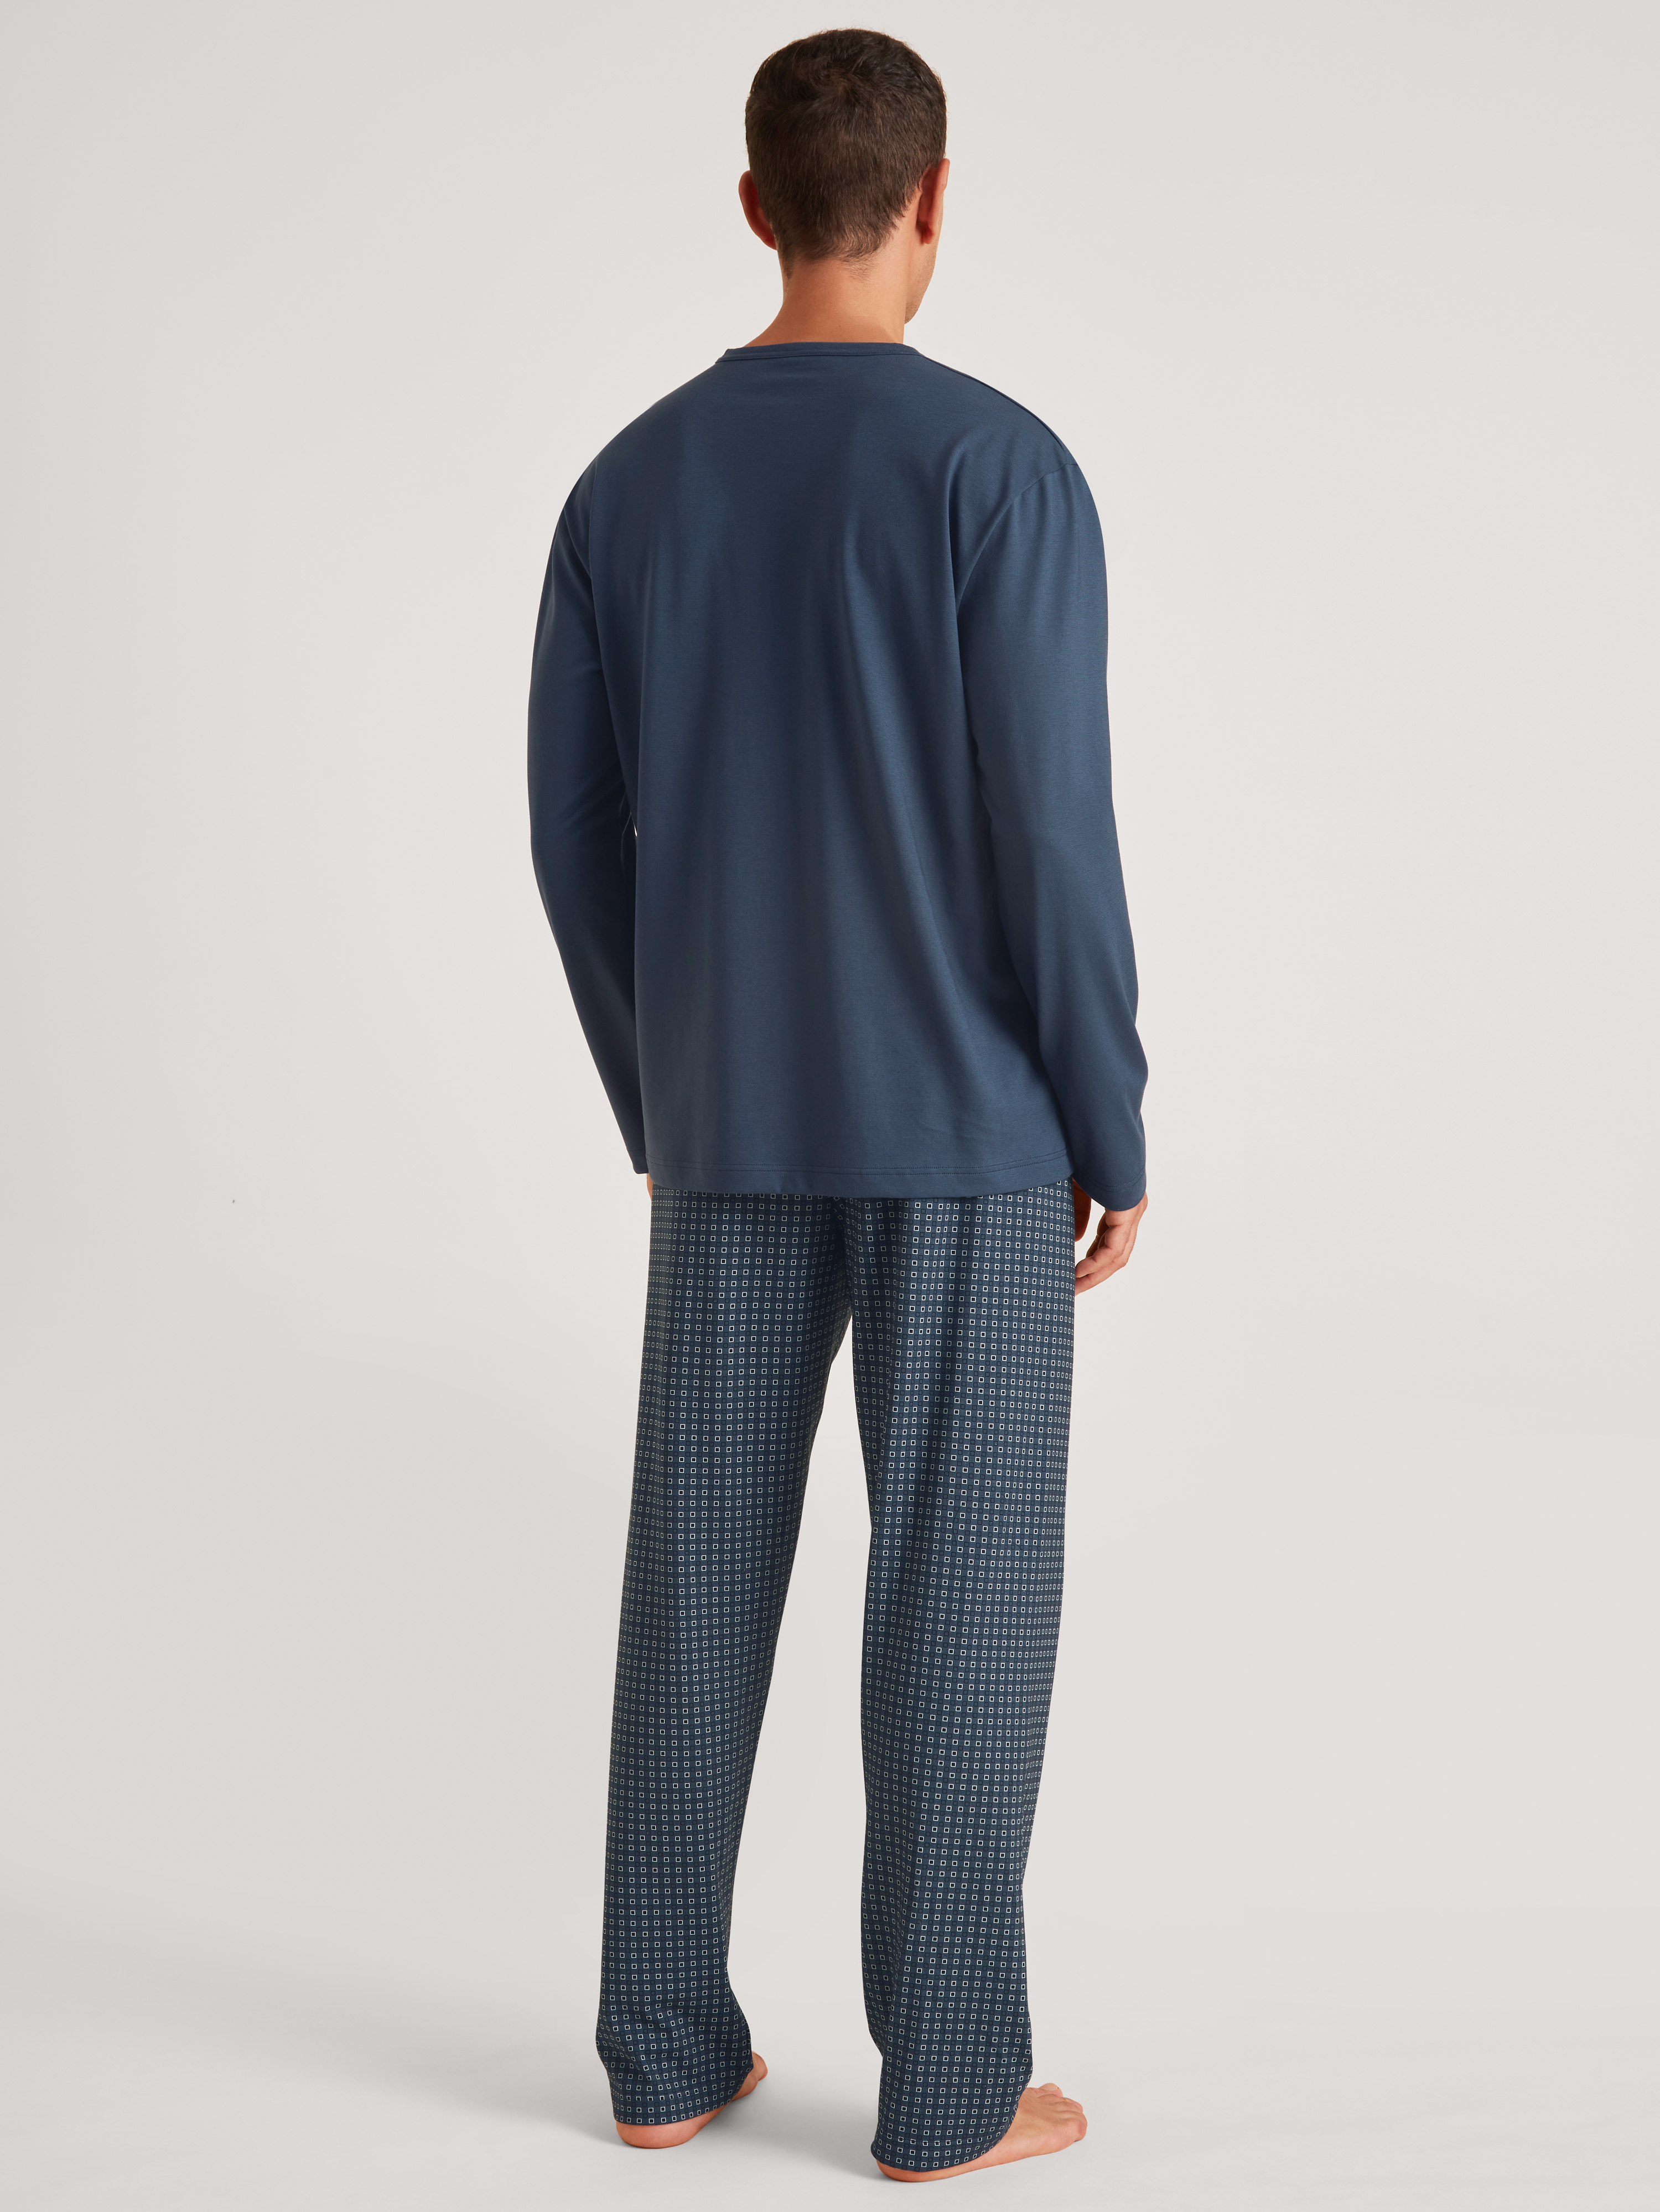 Herren-Schlafanzug aus leichtem Single-Jersey und gemusterter Hose in reiner Baumwolle